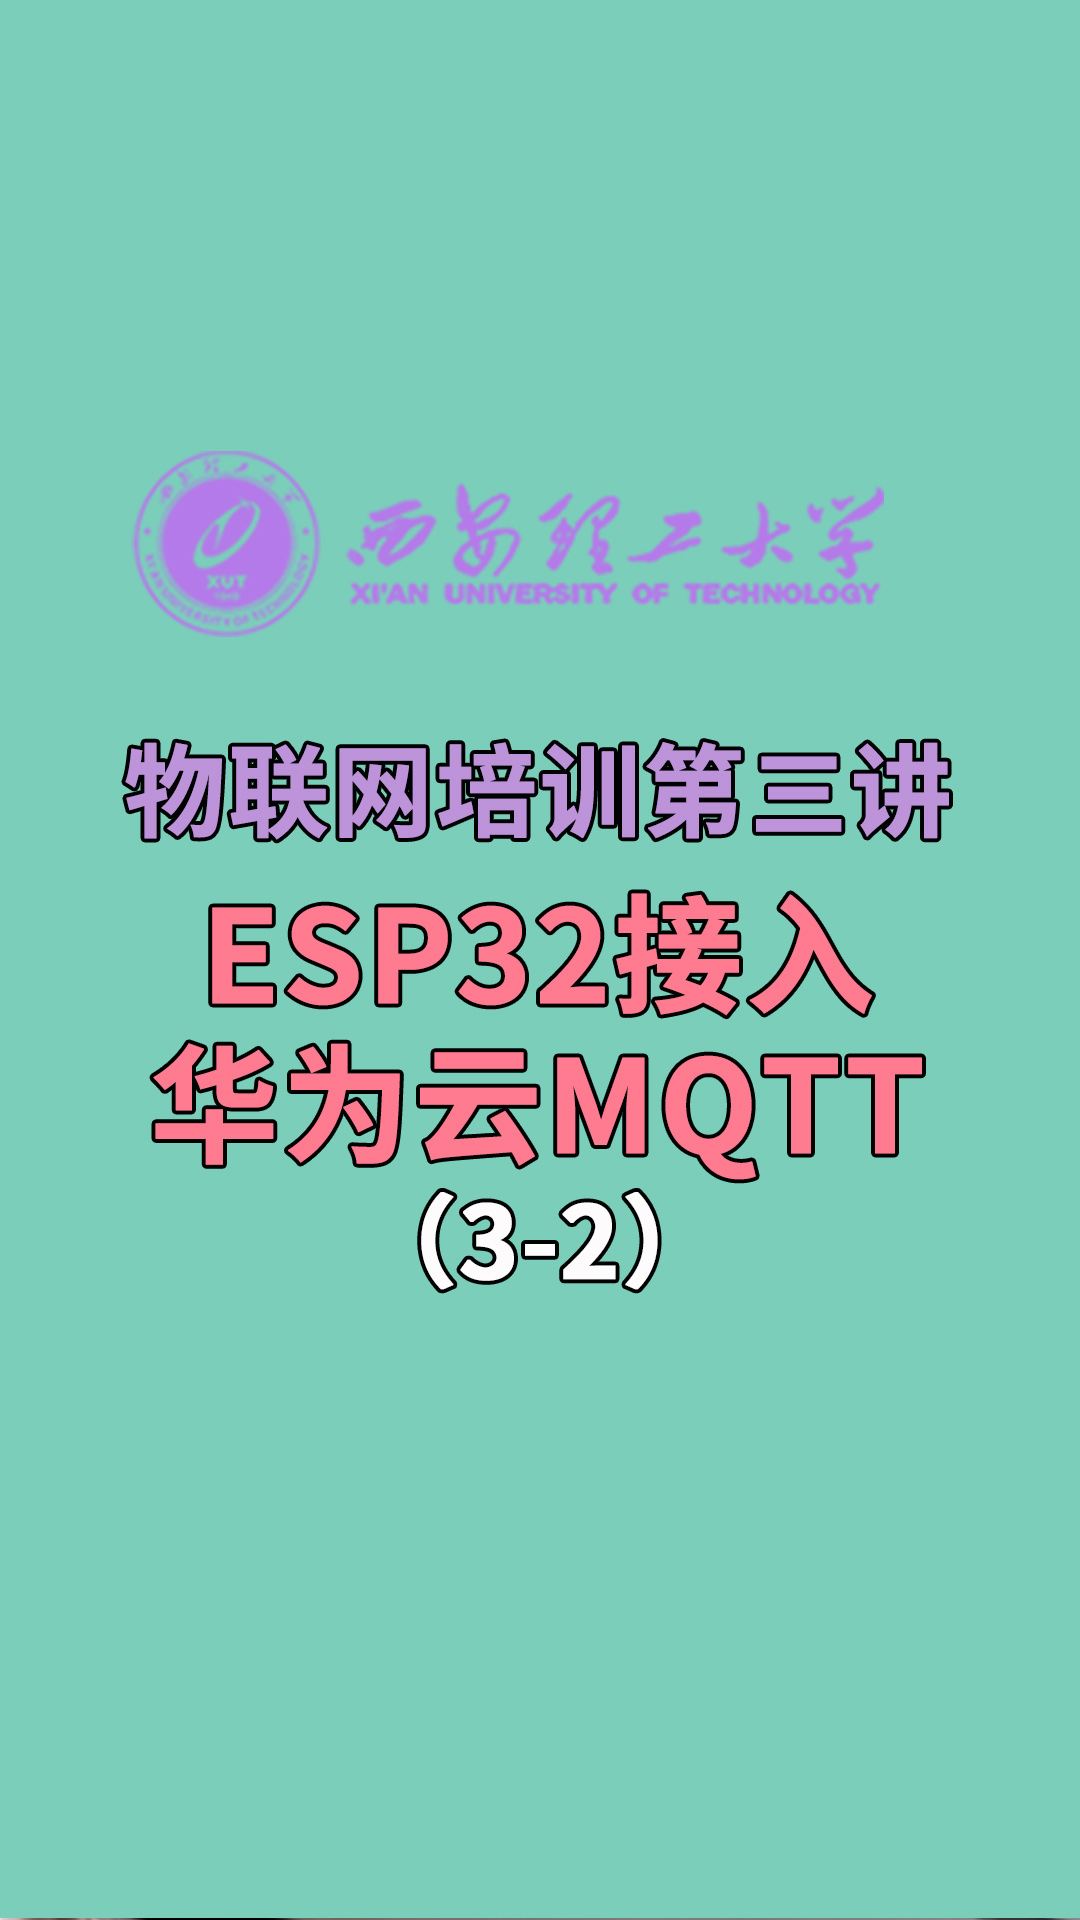 西安理工大學-物聯網培訓第三講-ESP32接入華為云MQTT3-2#華為 